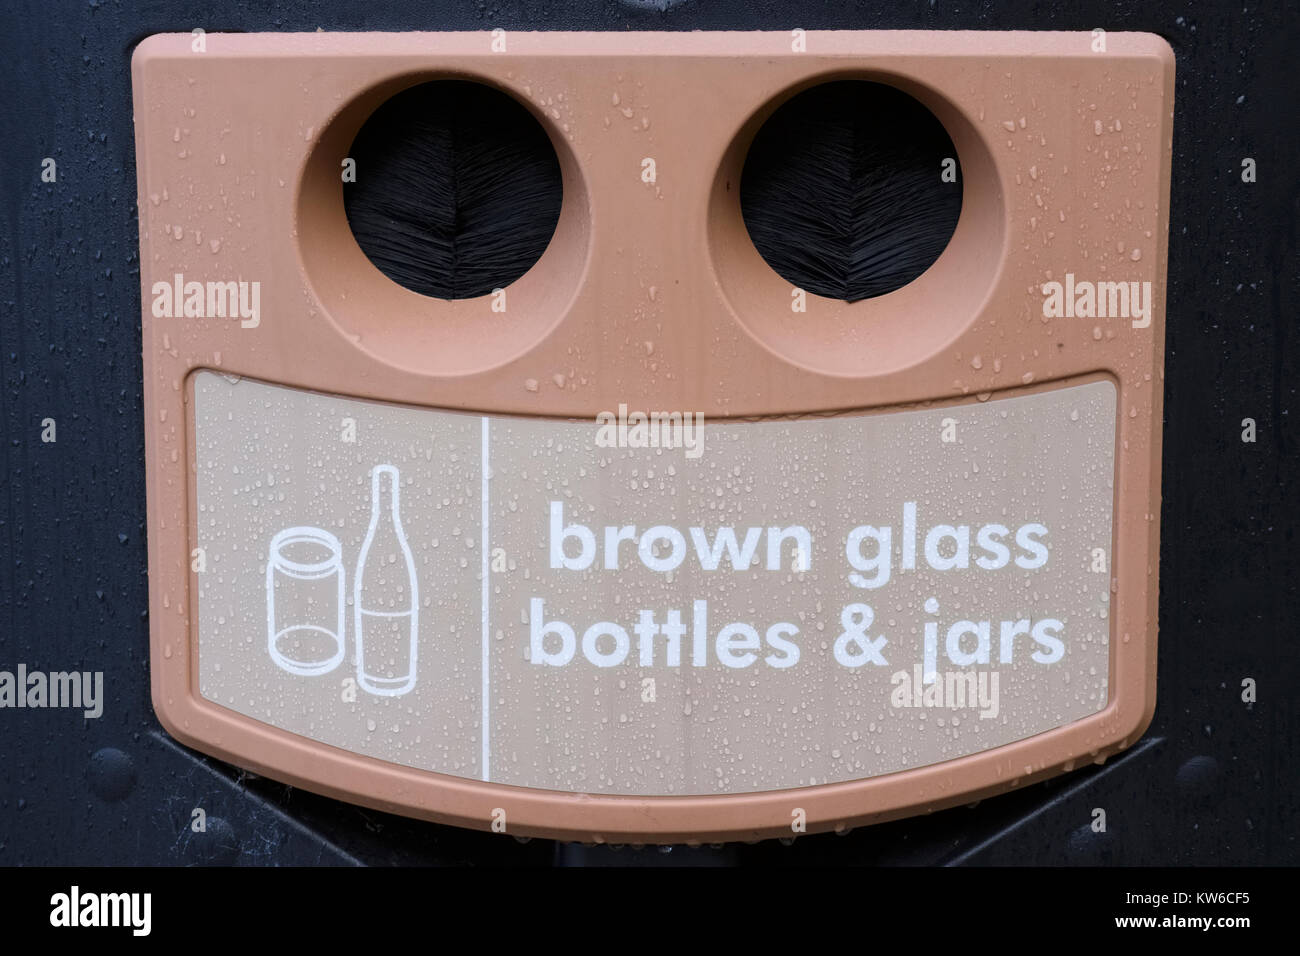 https://c8.alamy.com/compes/kw6cf5/reciclar-el-vidrio-marron-botellas-tarros-banco-tienda-kw6cf5.jpg